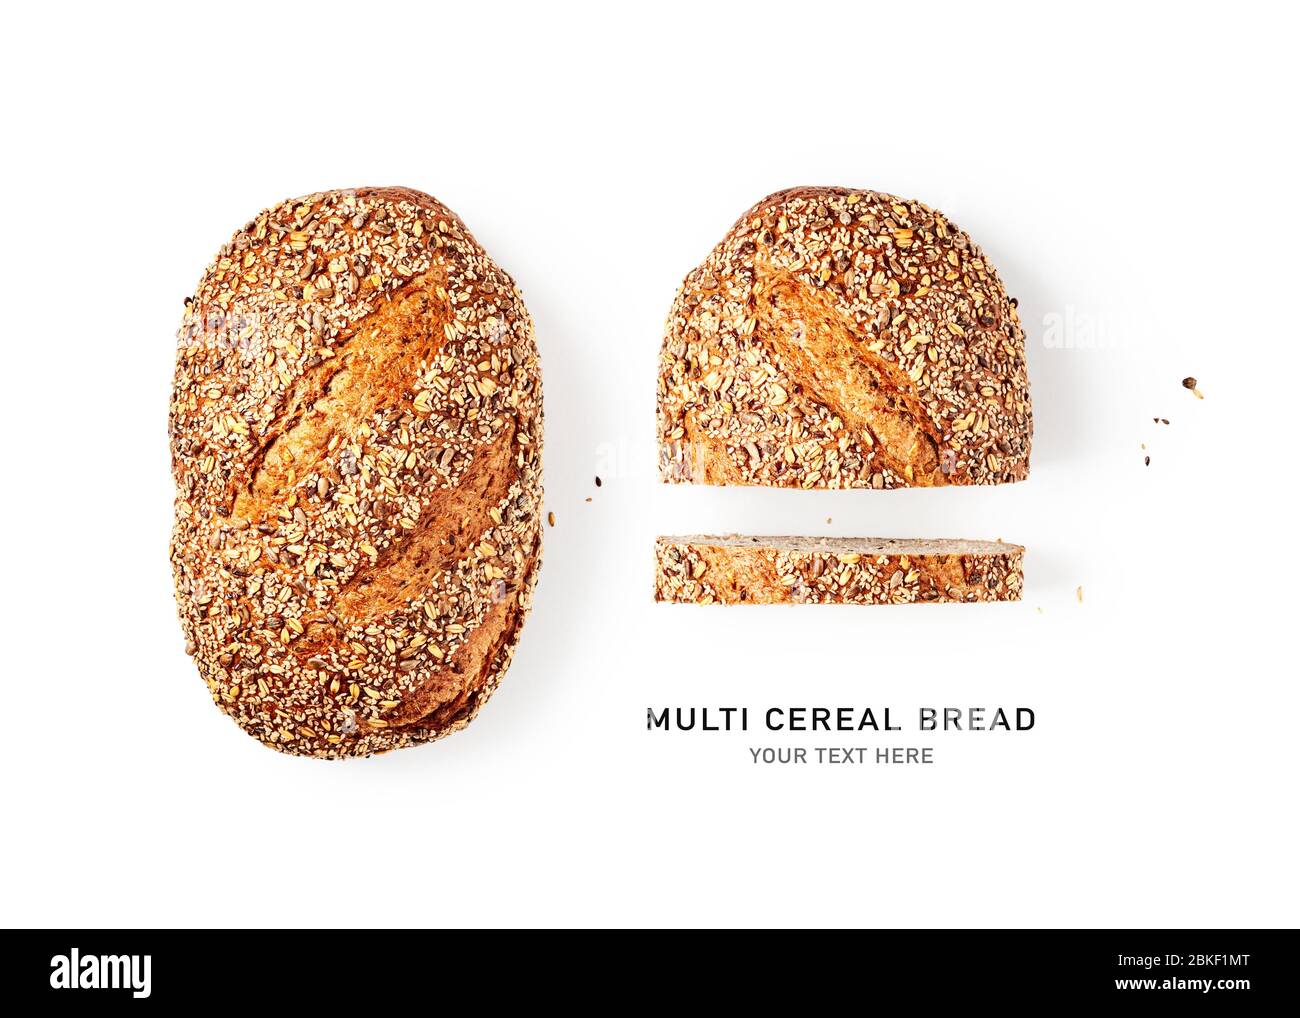 Layout creativo di pane fresco isolato su sfondo bianco. Pane di segale a grani multipli a fette con disposizione di semi differente. Mangiare sano e stare co Foto Stock